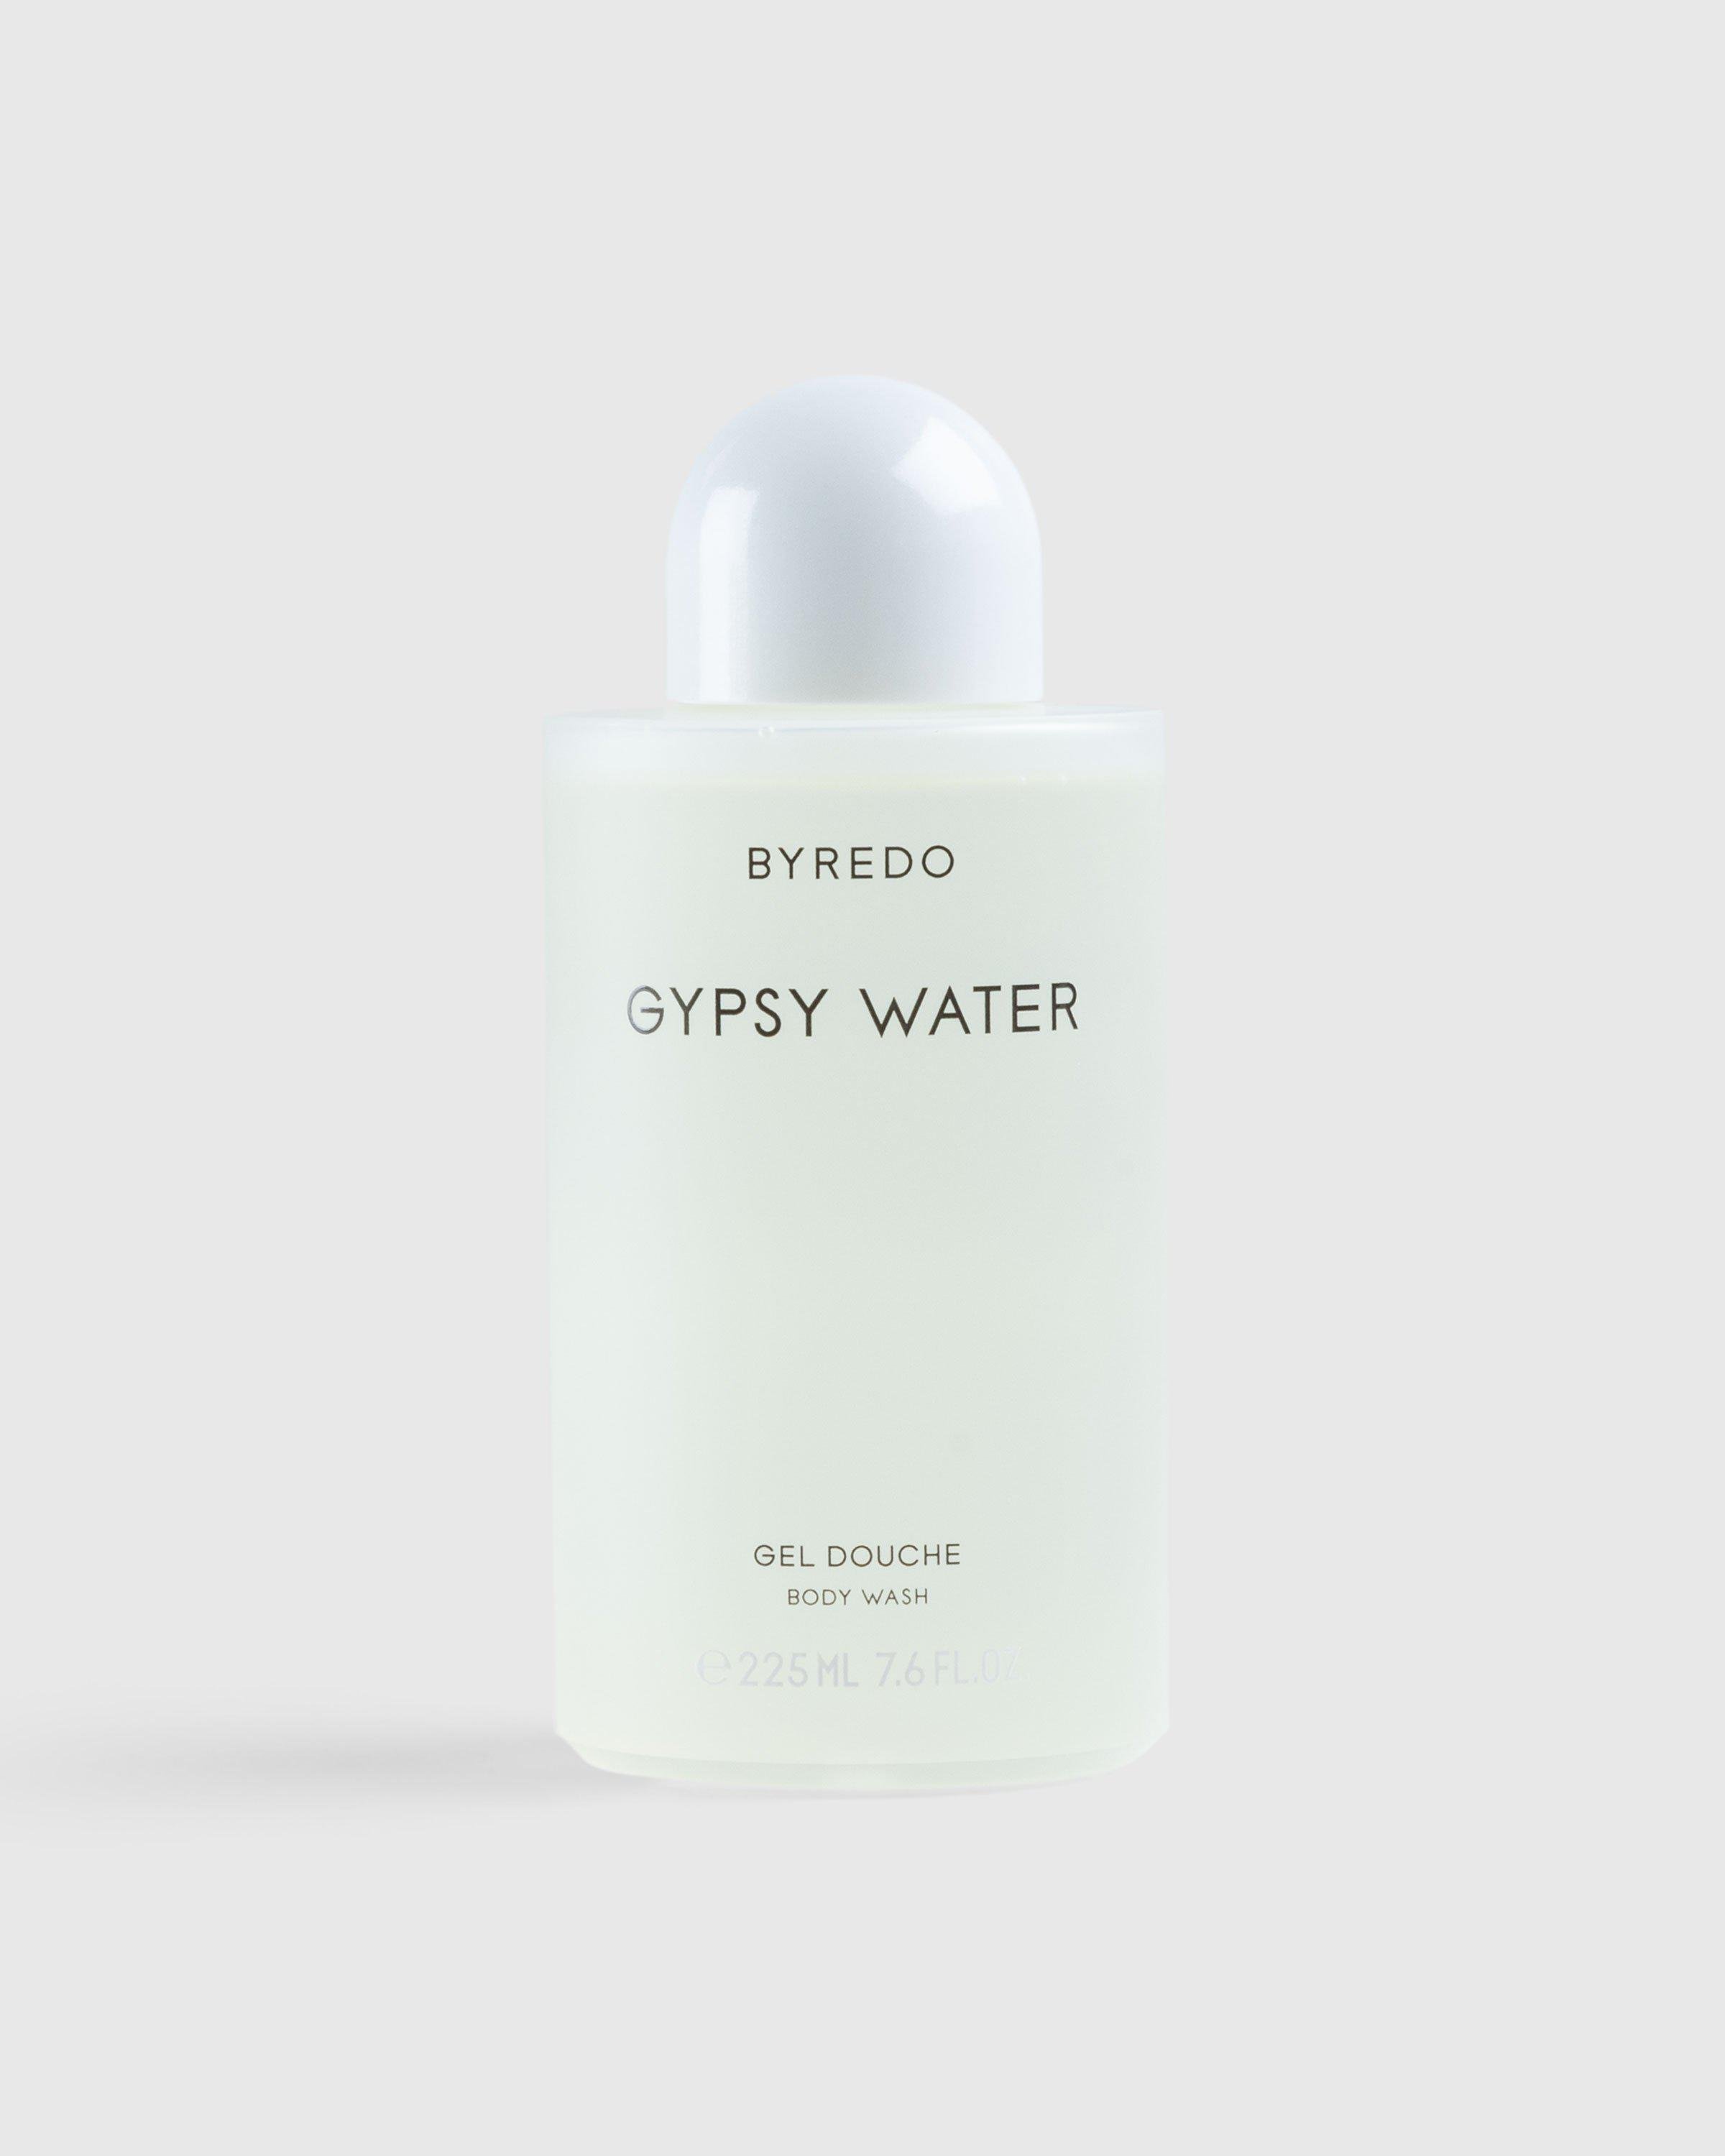 ByredoBody Wash 225ml Gypsy Water by HIGHSNOBIETY